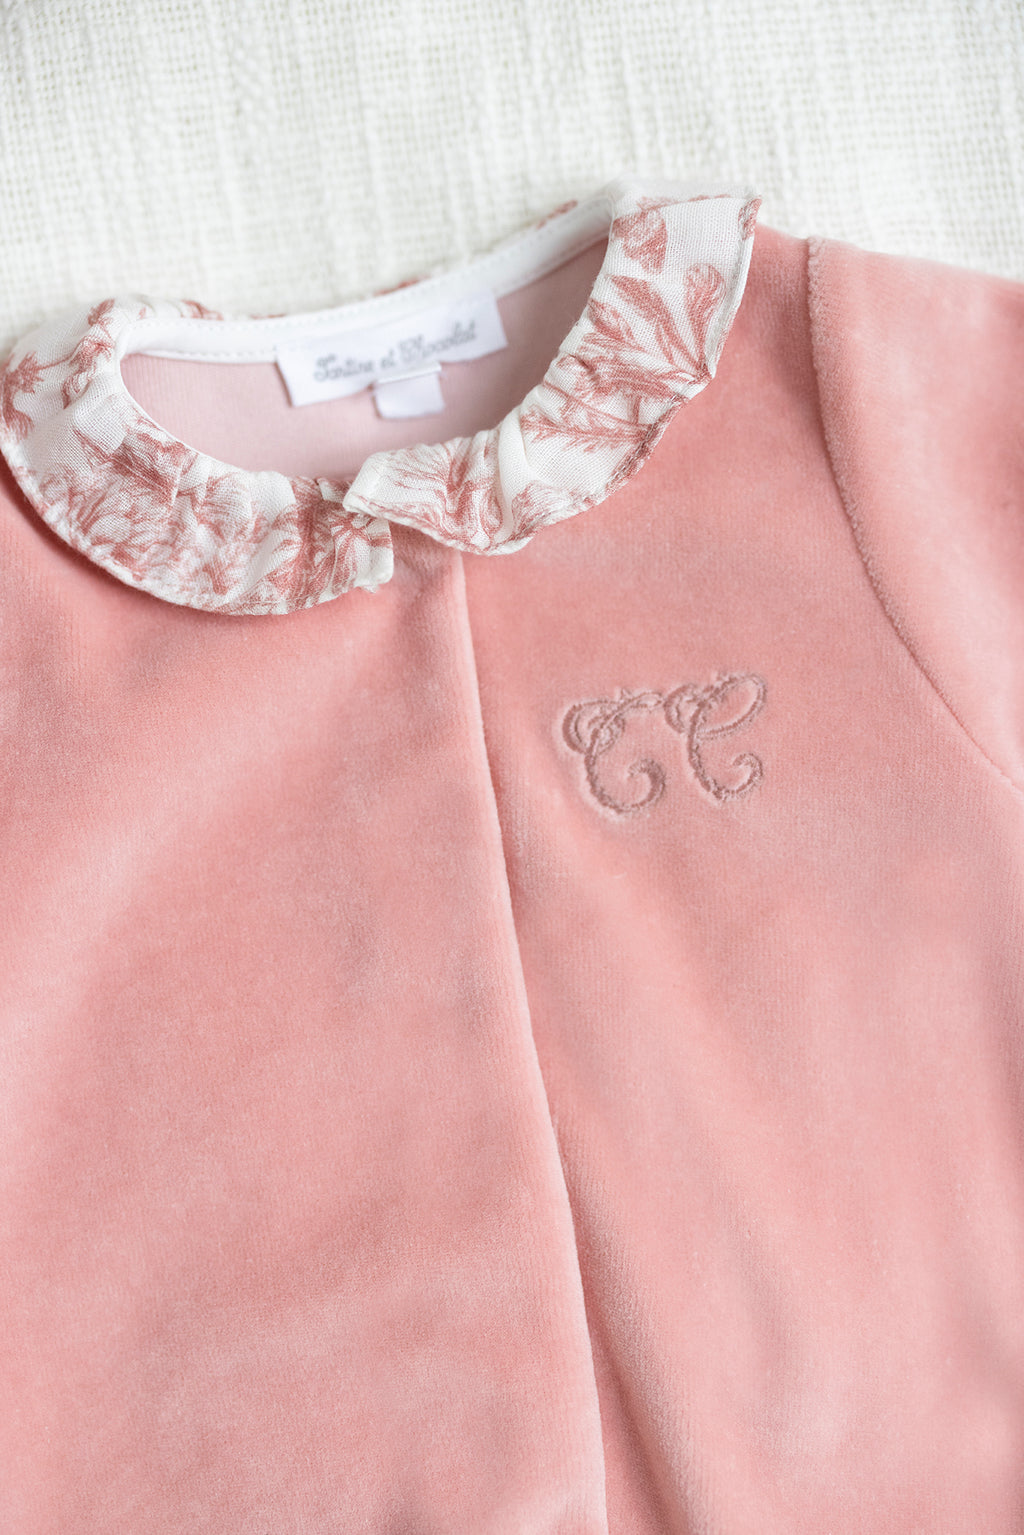 Pijama - Rosa en Terciopelo Estampado inspiración Toile de jouy